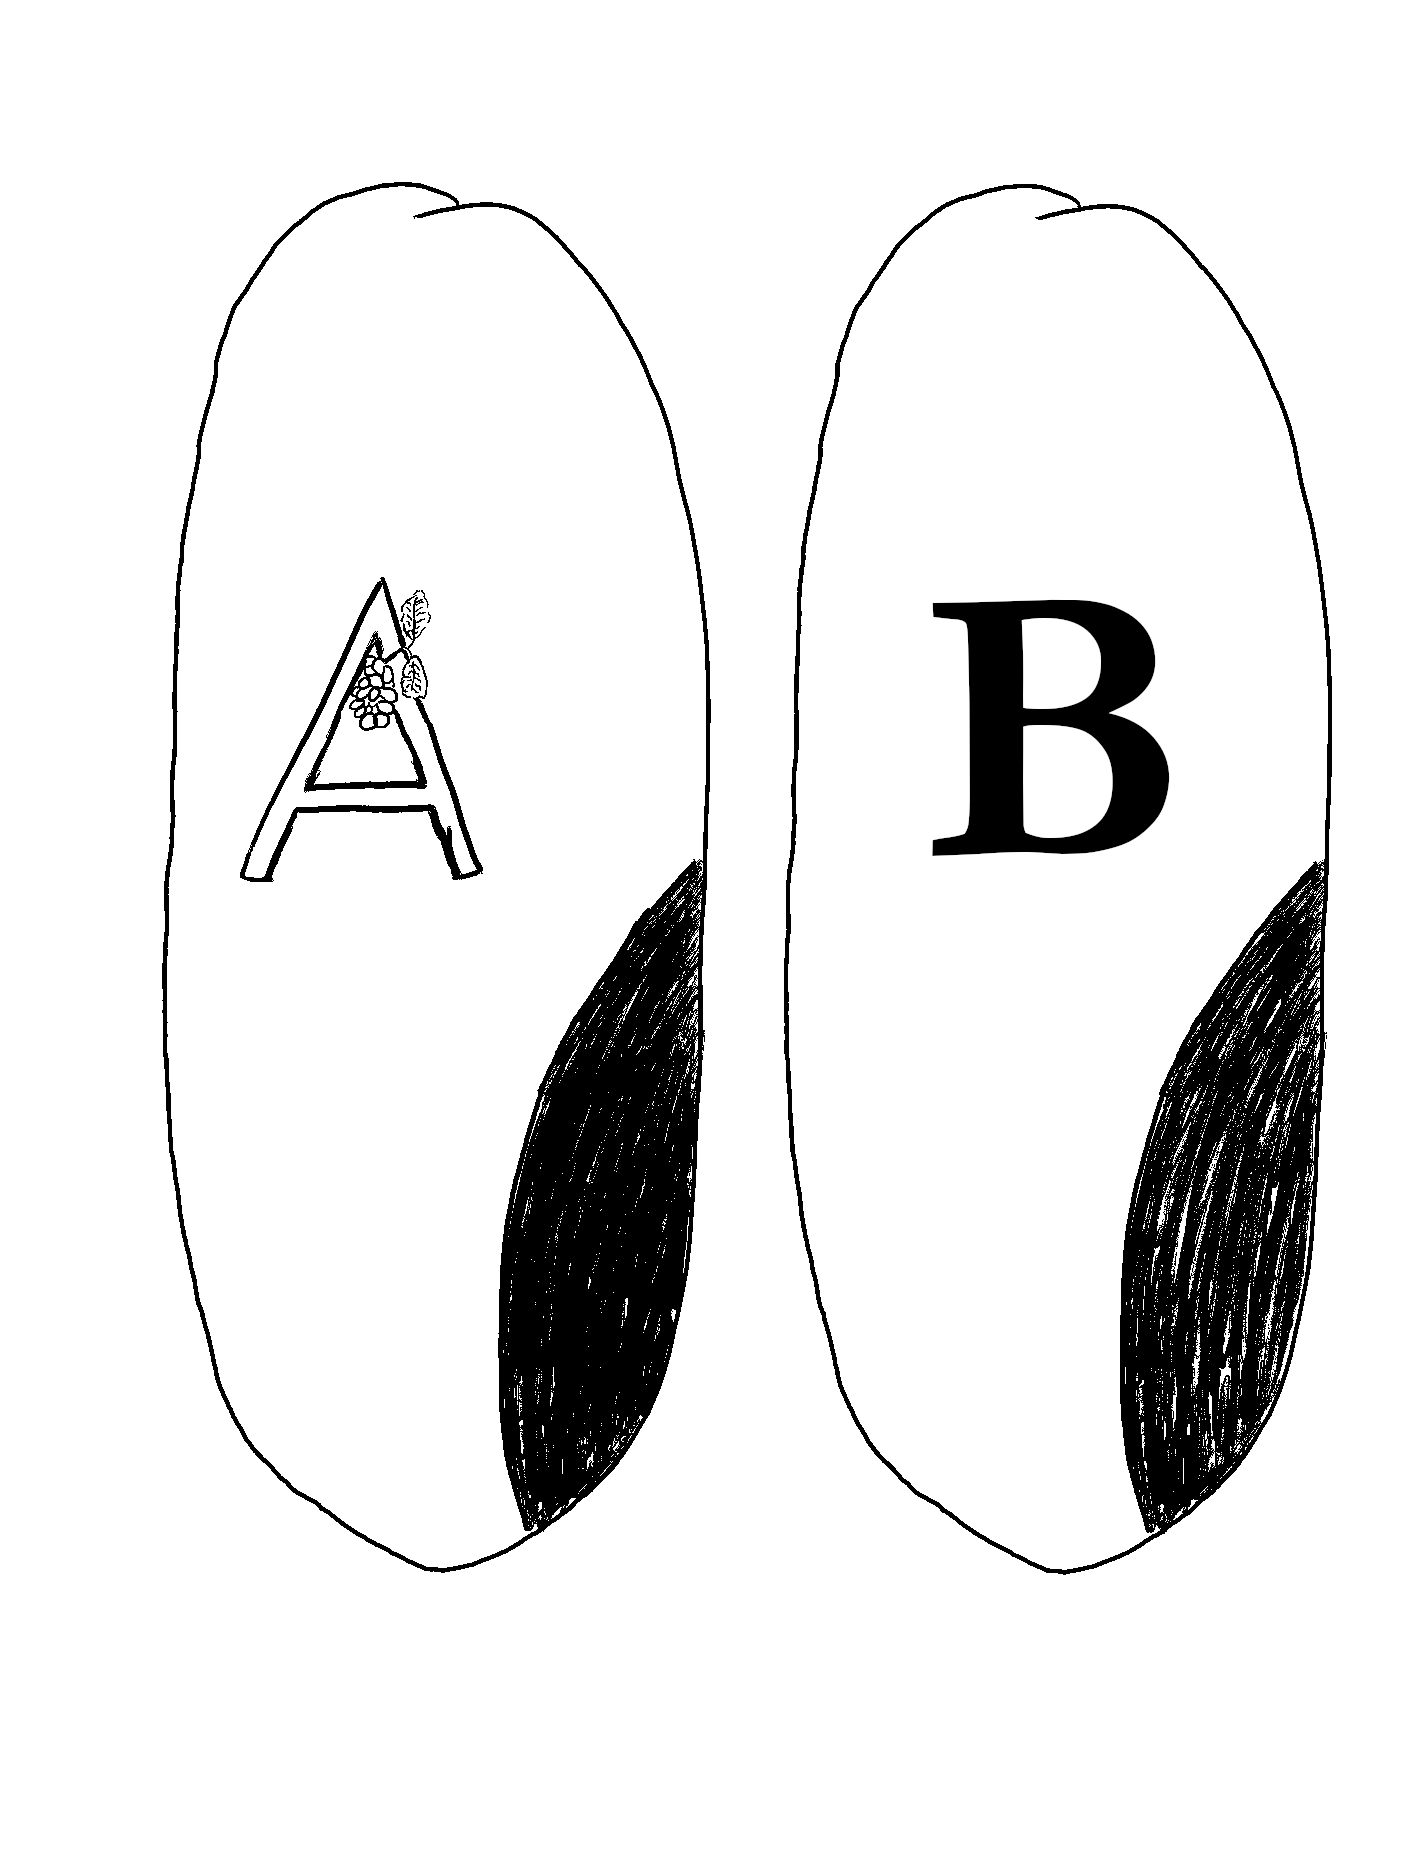 A und B - eine Skizze, zwei Augen